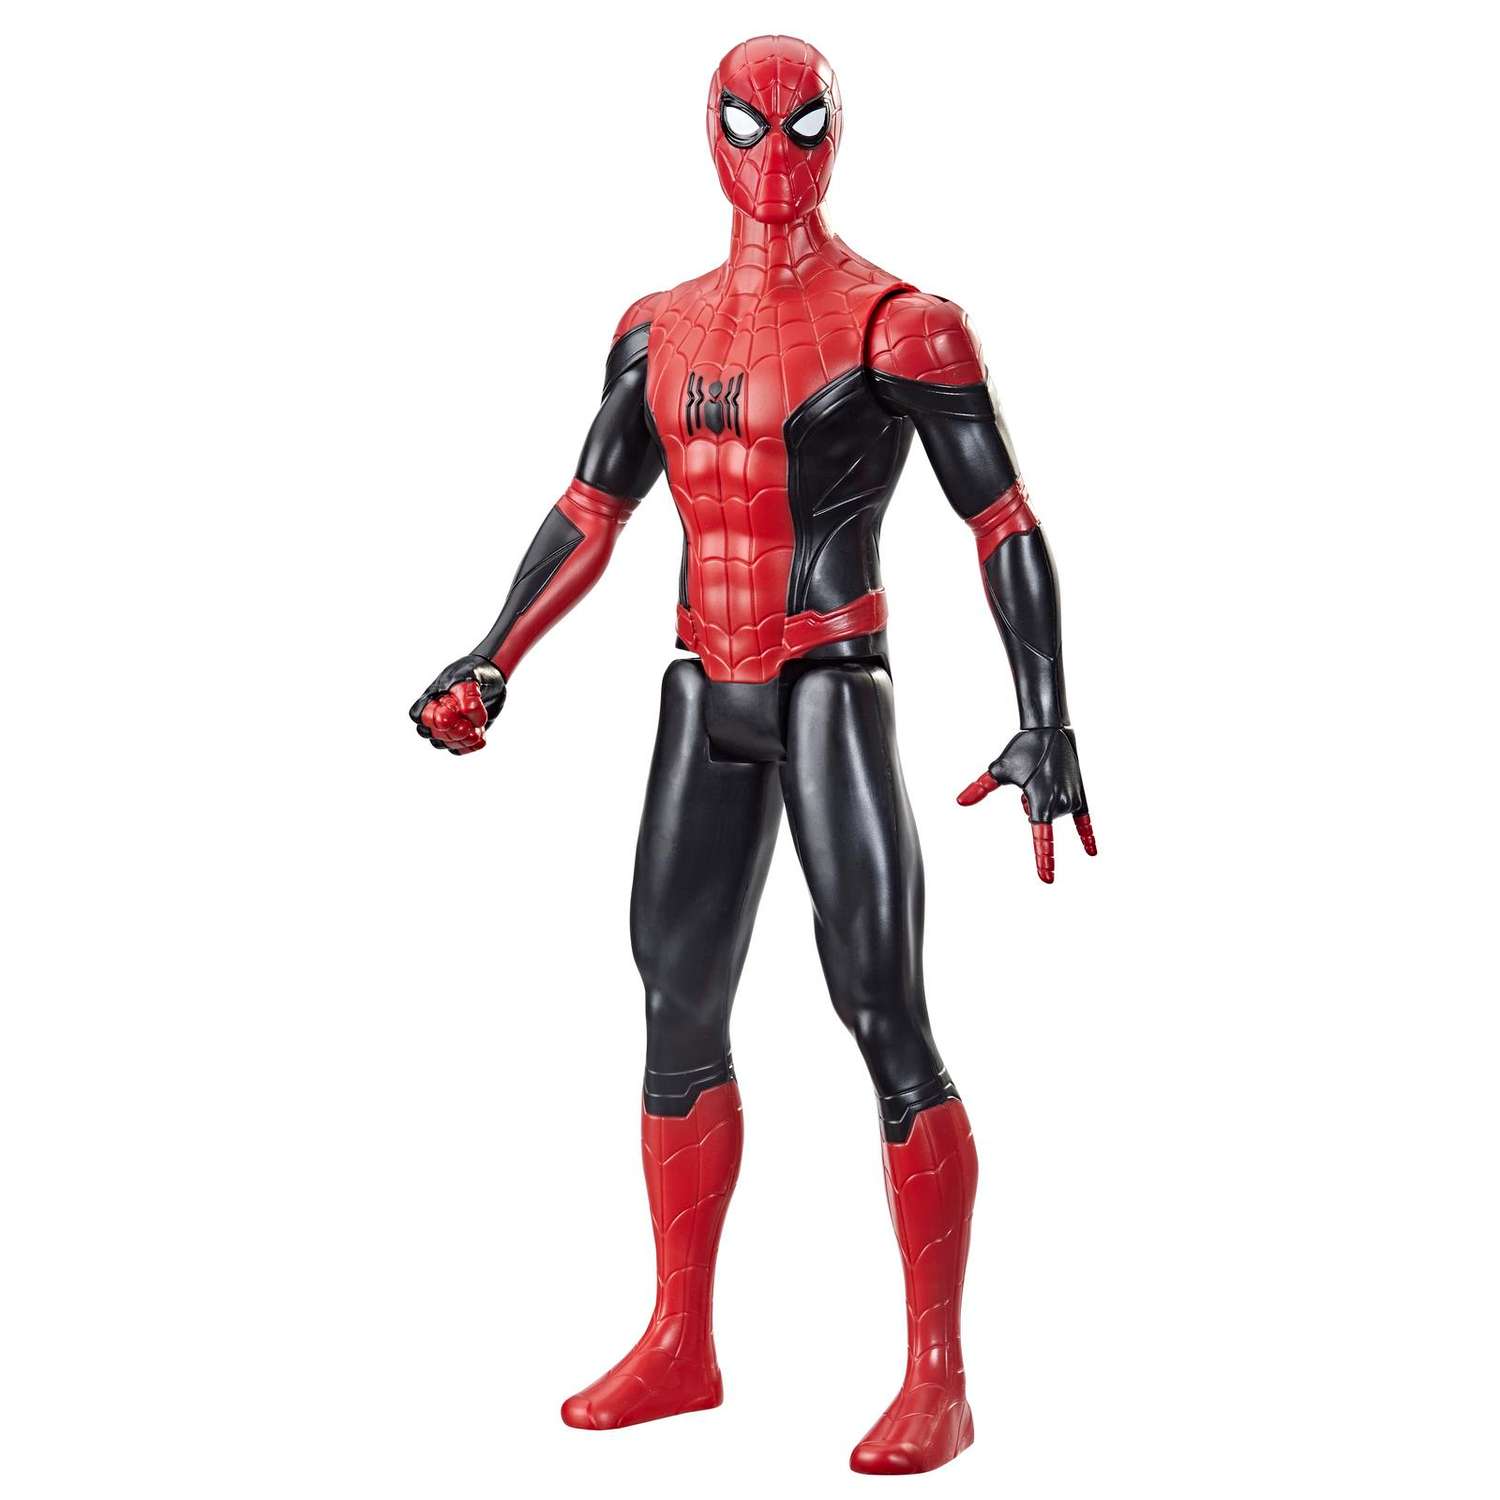 Фигурка Человек-Паук (Spider-man) Титан Человек-Паук Пионер F20525X0 - фото 1